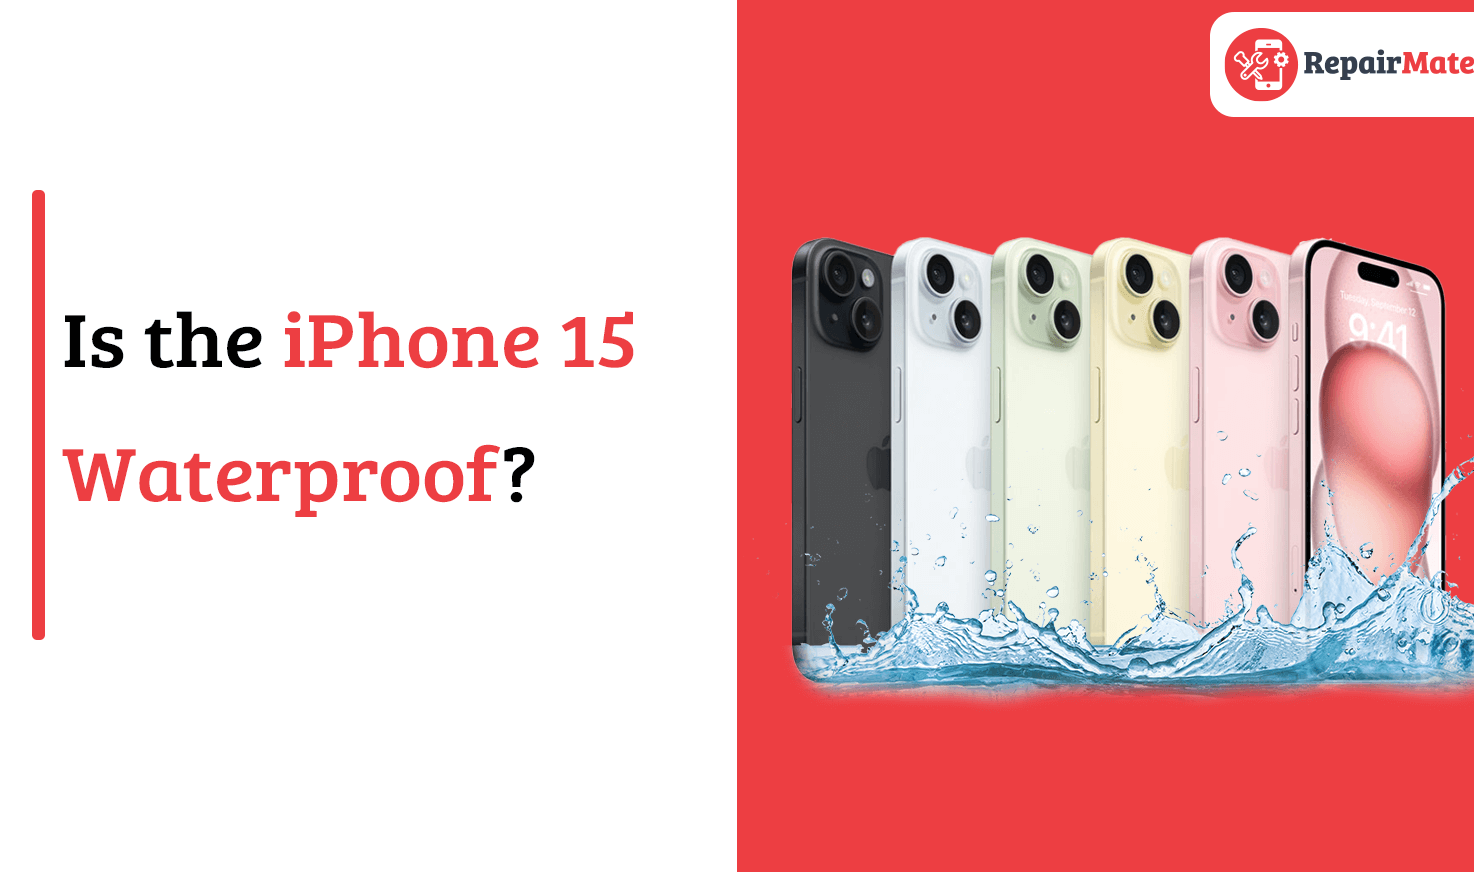 iPhone 15 waterproof